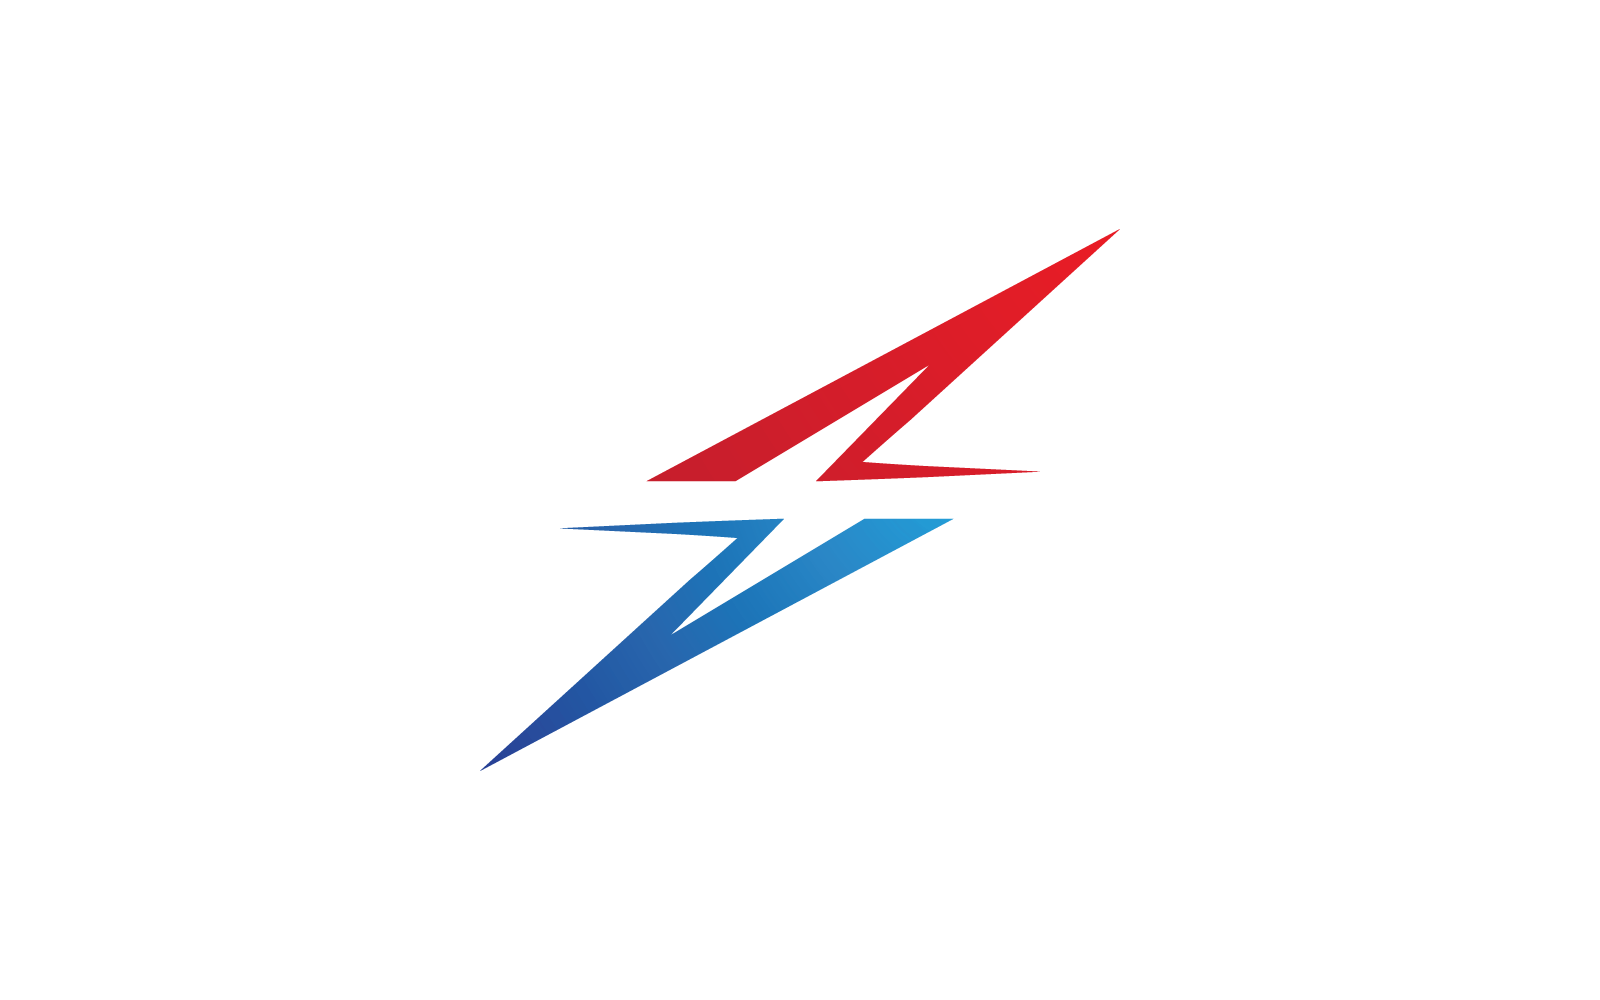 Power lightning power energy logo vector